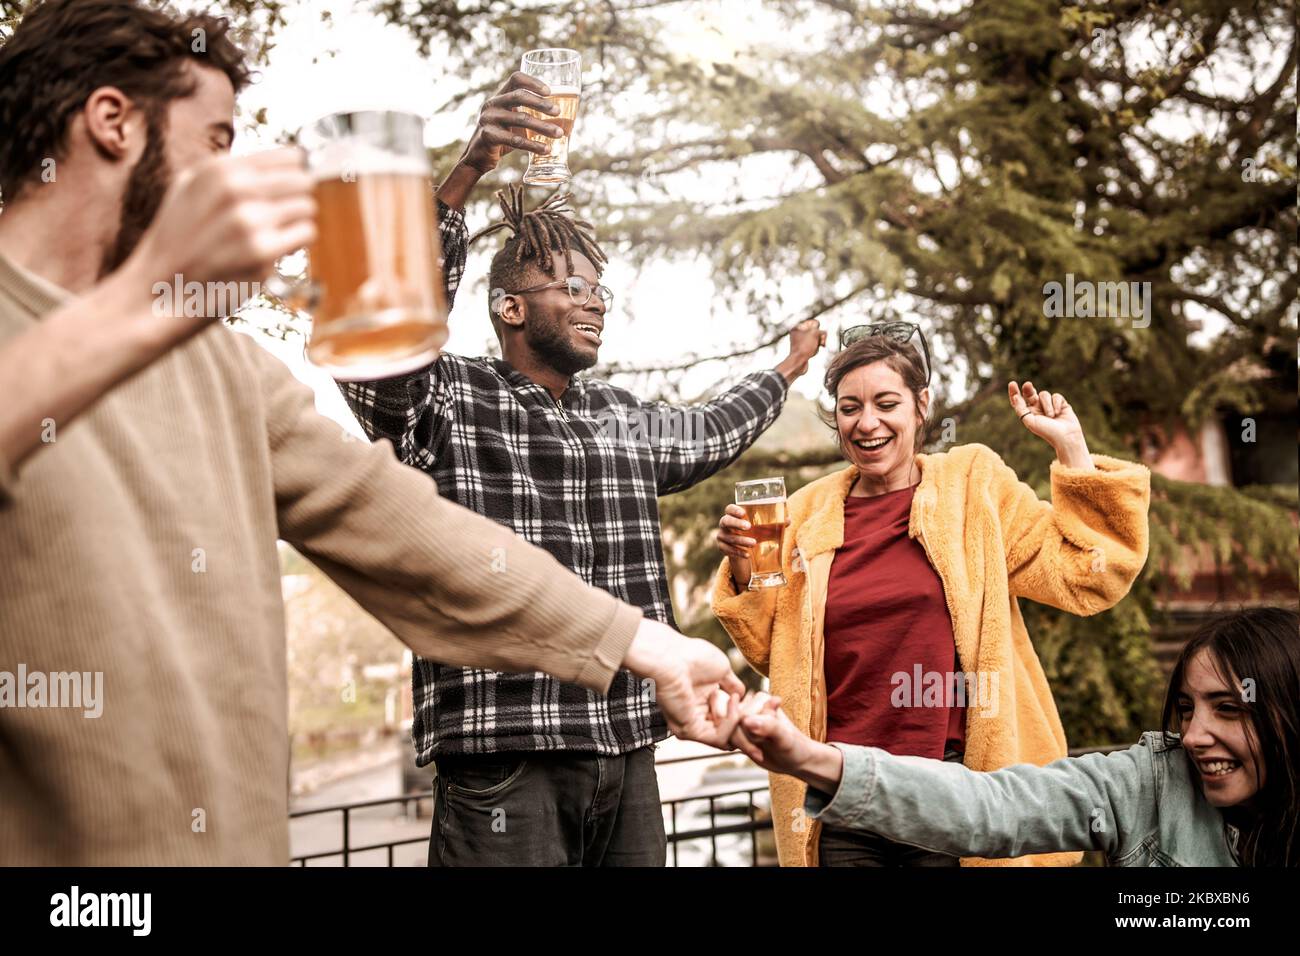 Fröhliche Gruppe verschiedener multiethnischer junger Freunde, die Bier trinken und gemeinsam auf einer Tanzparty im Freien Spaß haben - vielrassige, schwungige Menschen feiern Stockfoto